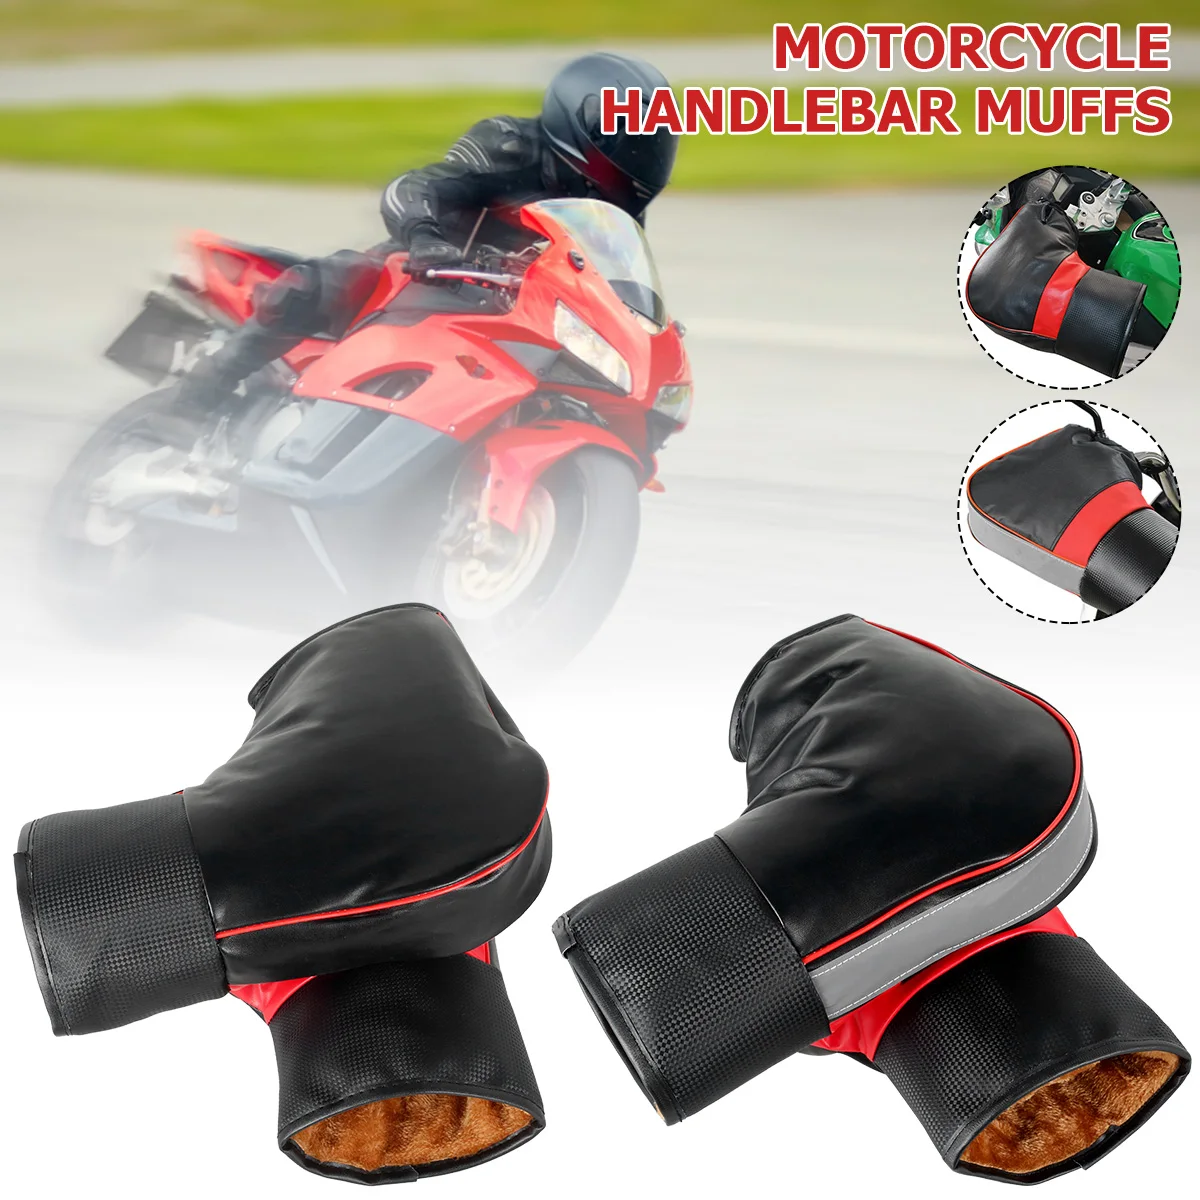 זוג כפפות עבות המתחברות לכידון האופנוע מחממות במיוחד ועמידות לגשם